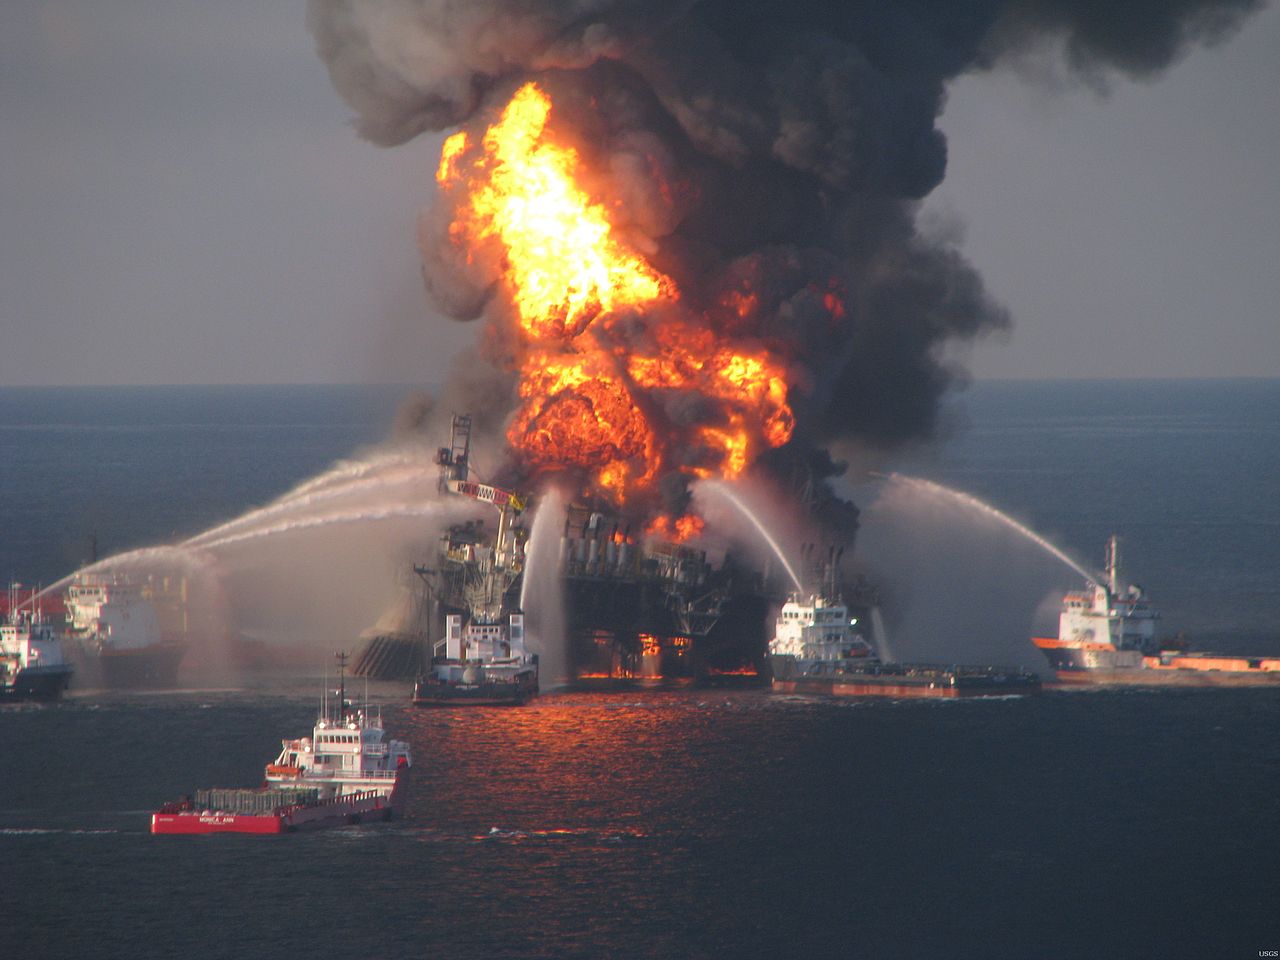 Τα πετρέλαια έρχονται… την περίπτωση δυστυχήματος την έχουμε σκεφτεί;